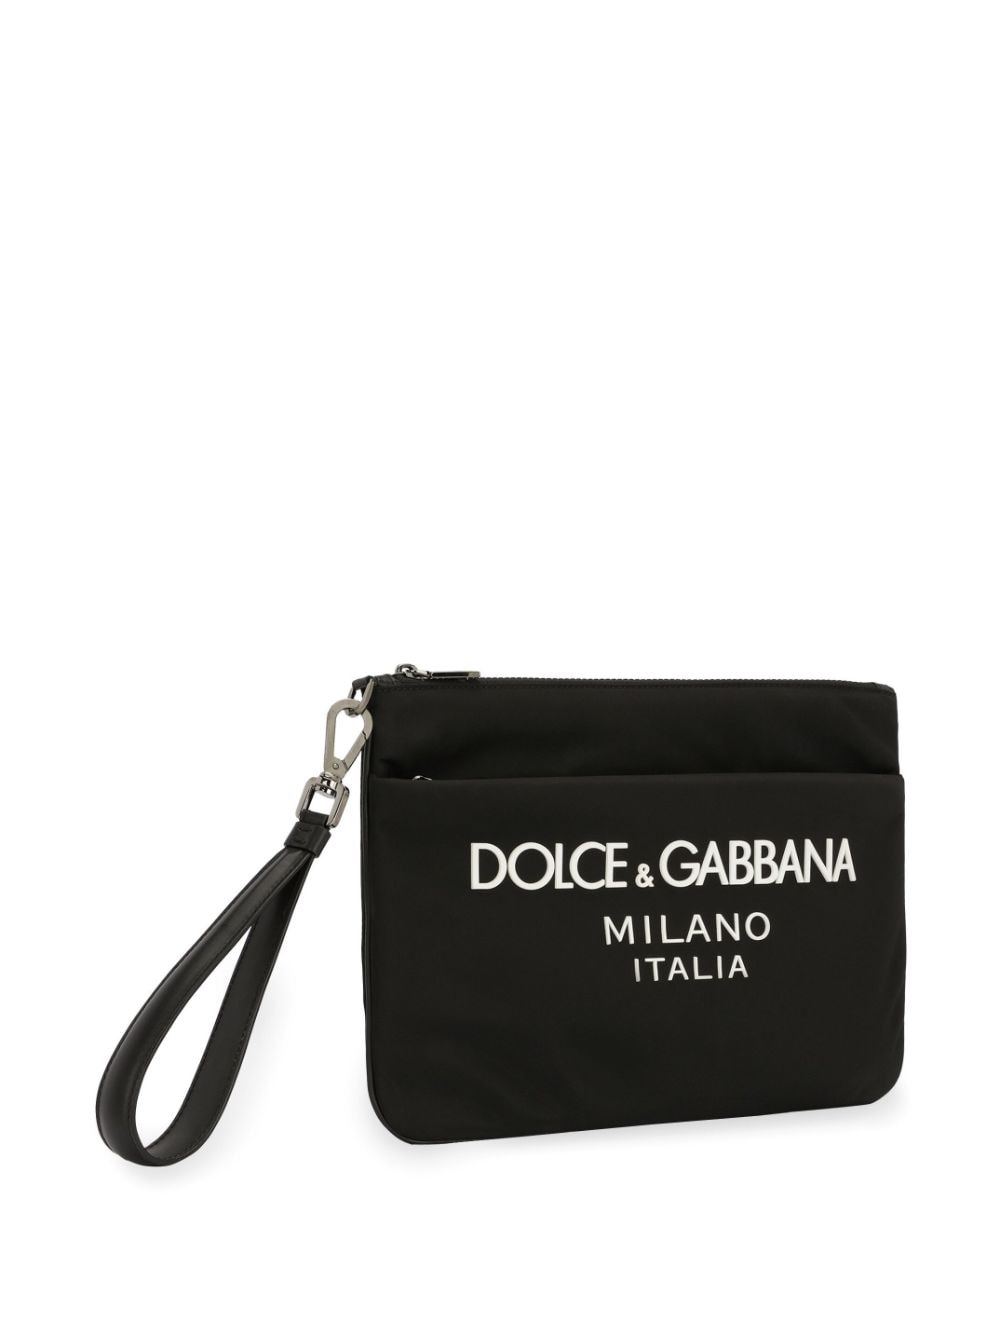 DOLCE & GABBANA Men's Nylon Logo Print Zipped Wallet with Wrist Strap